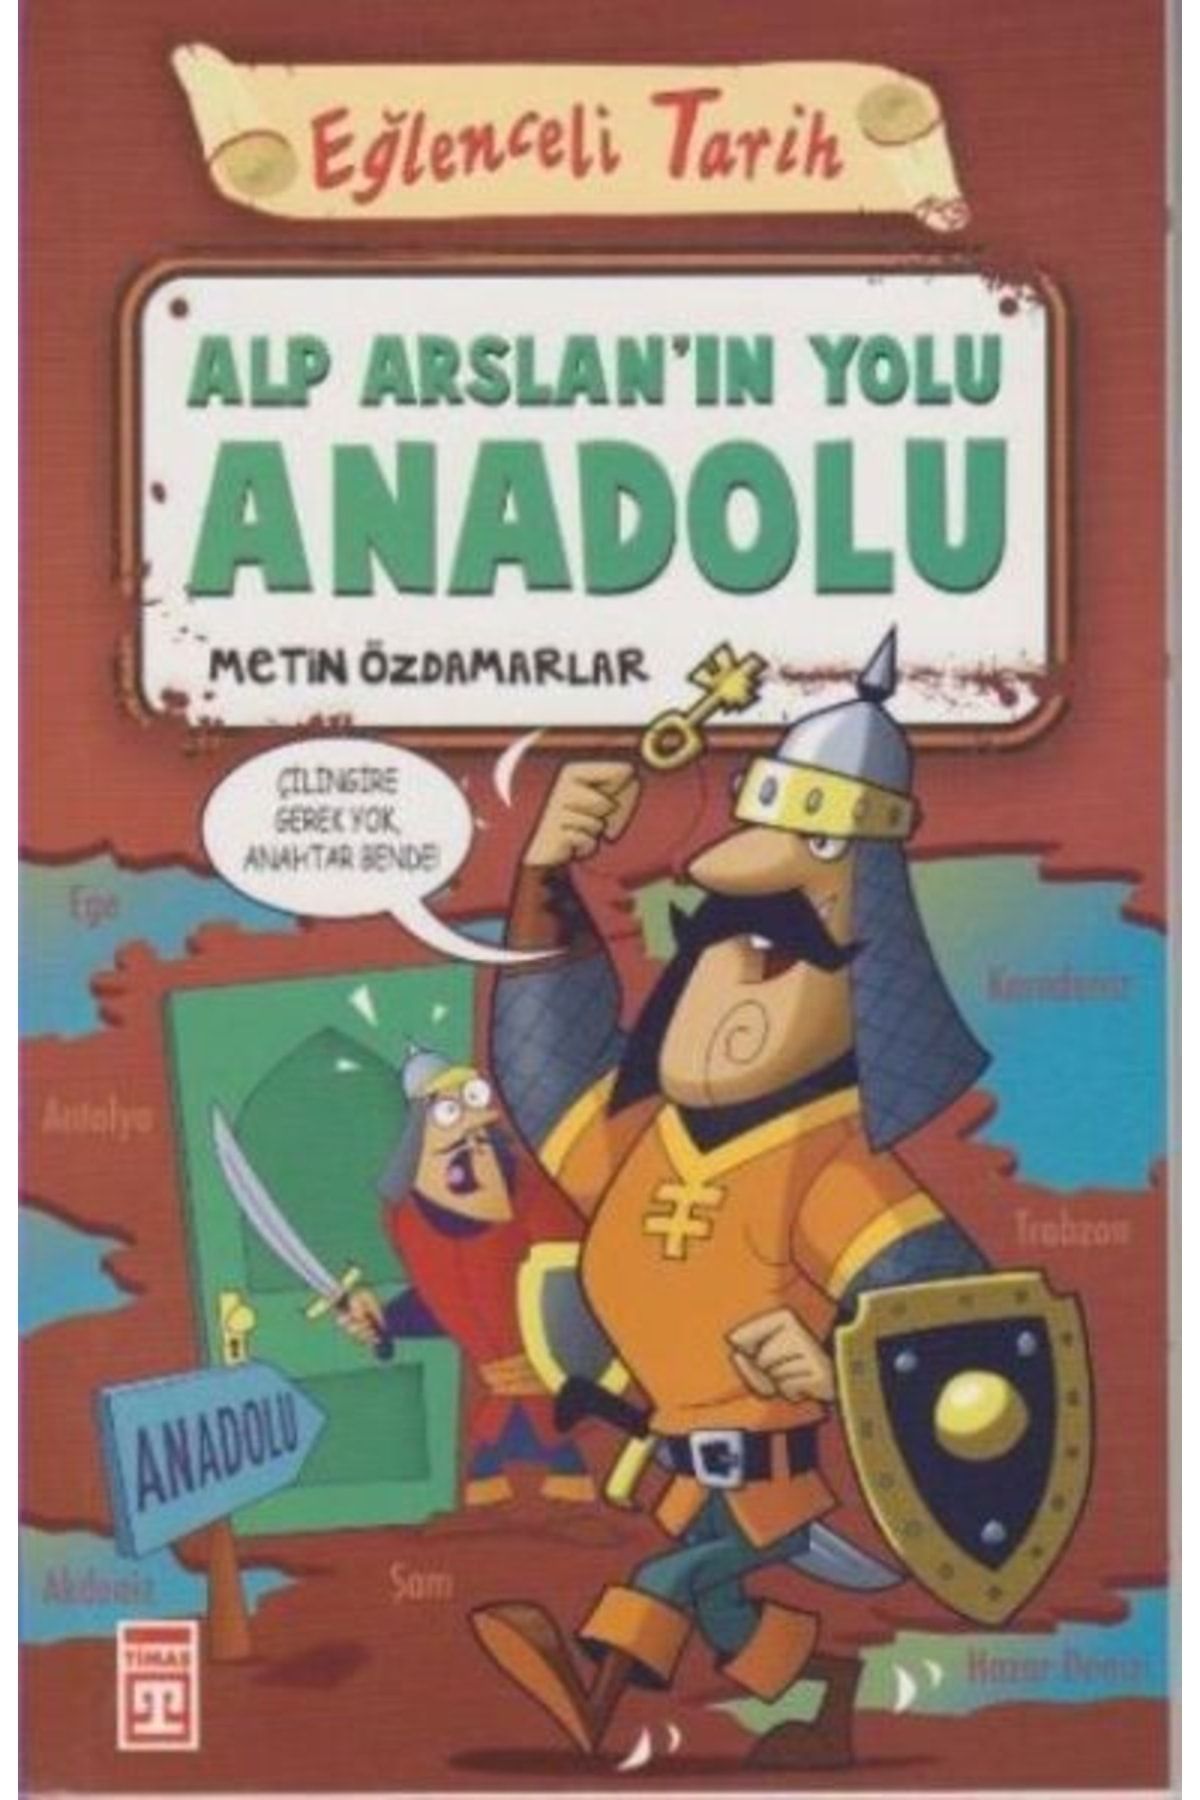 Timaş Yayınları Alp Arslan'ın Yolu Anadolu - Metin Özdamarlar Alp Arslan'ın Yolu Anadolu Kitabı" - Eğlenceli Bilgi Y